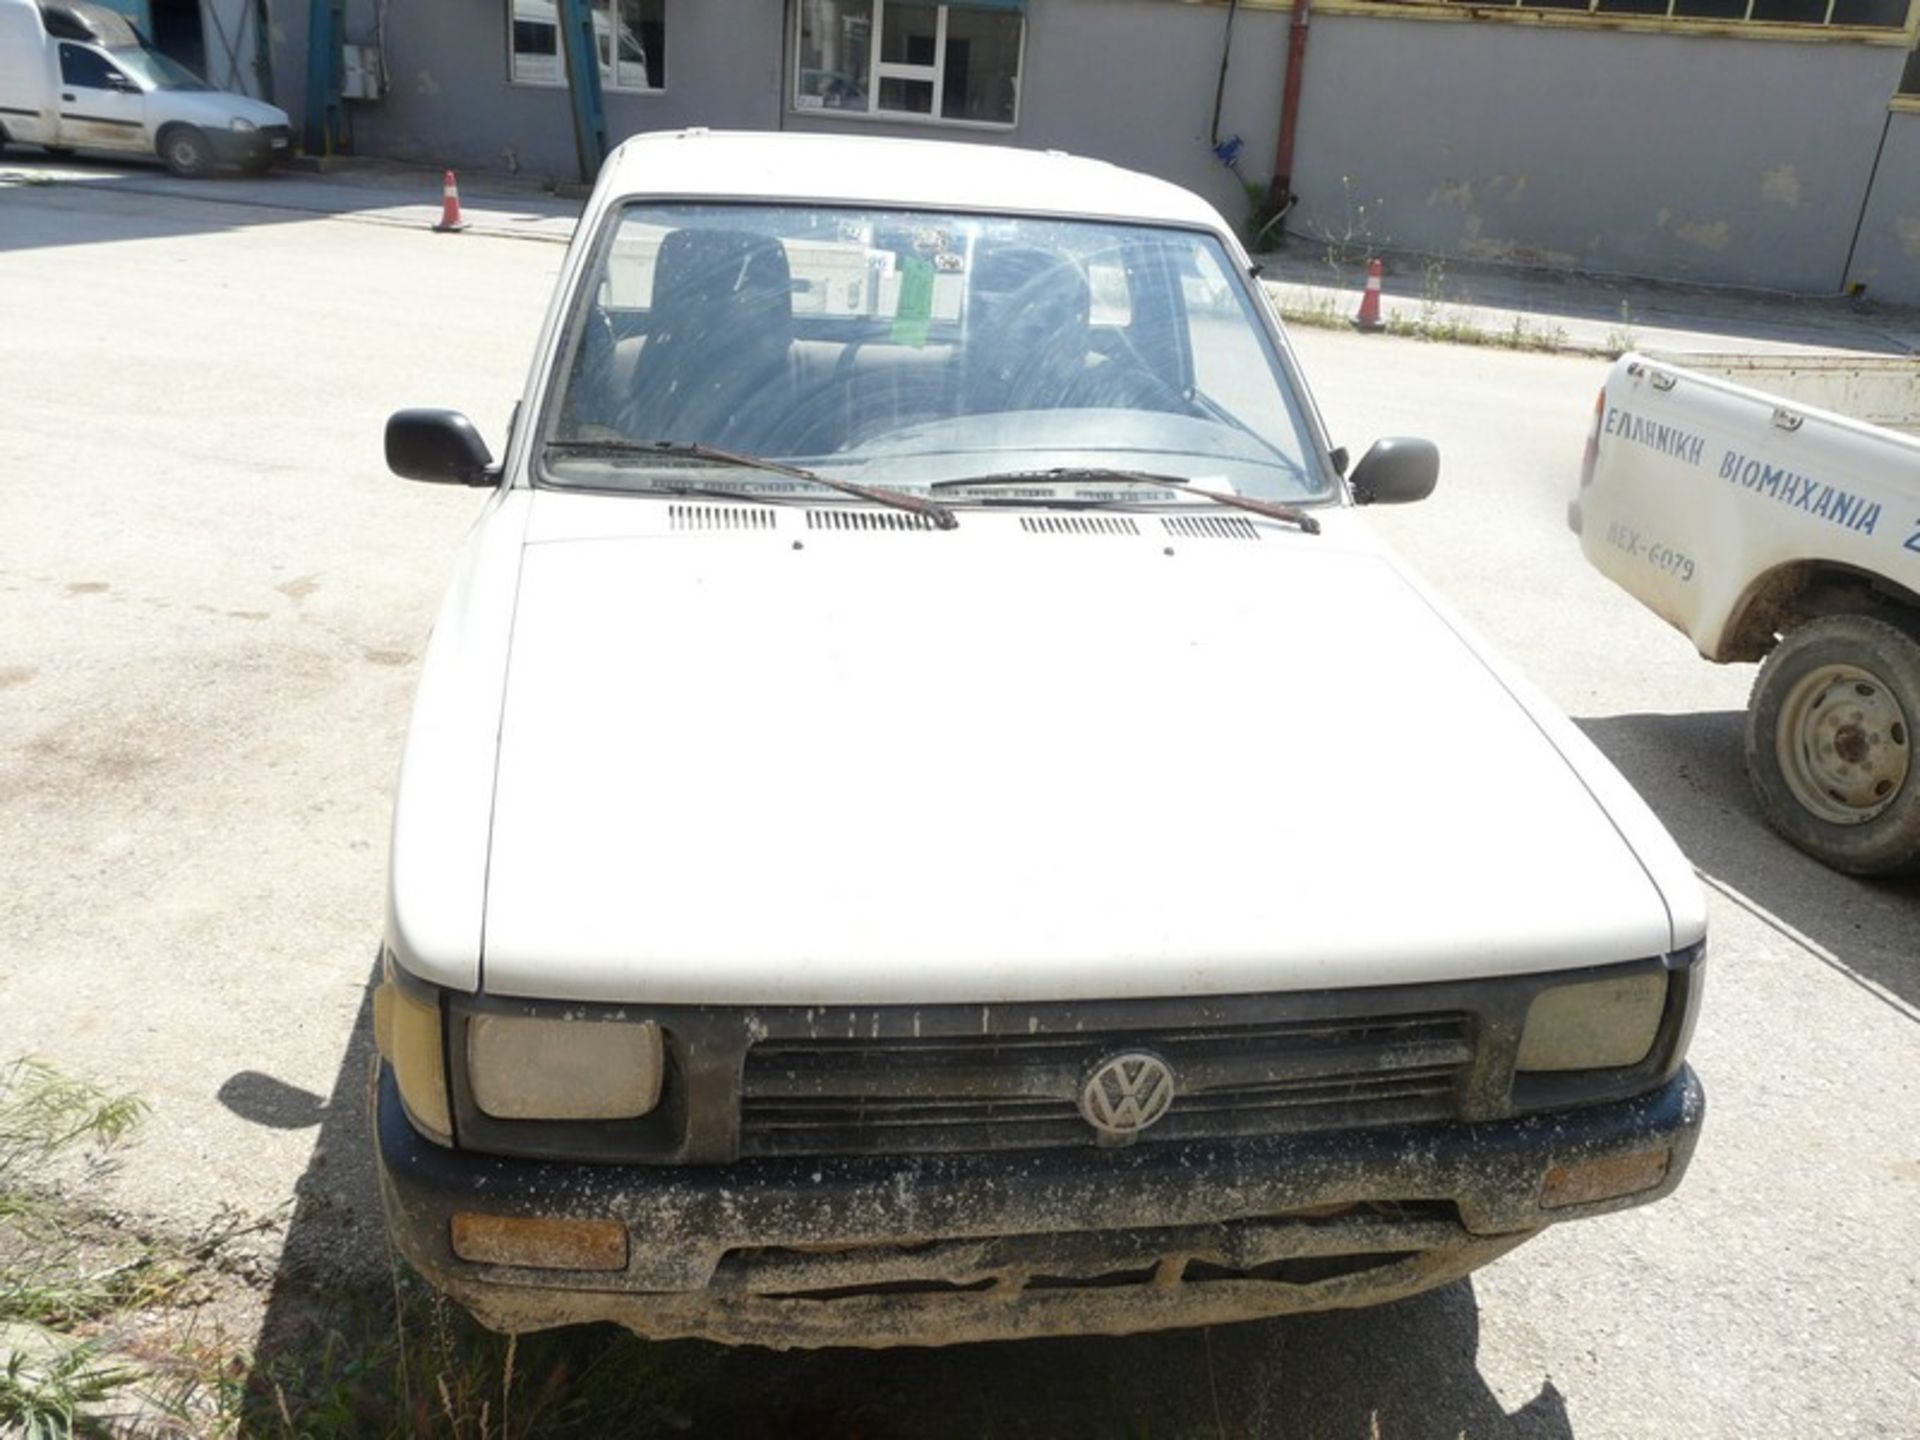 VW TARO 2,4D, KM: 295510, DIESEL, REG: NBY 4247,YEAR: 1996 (Located in Greece - Orestiada) Greek